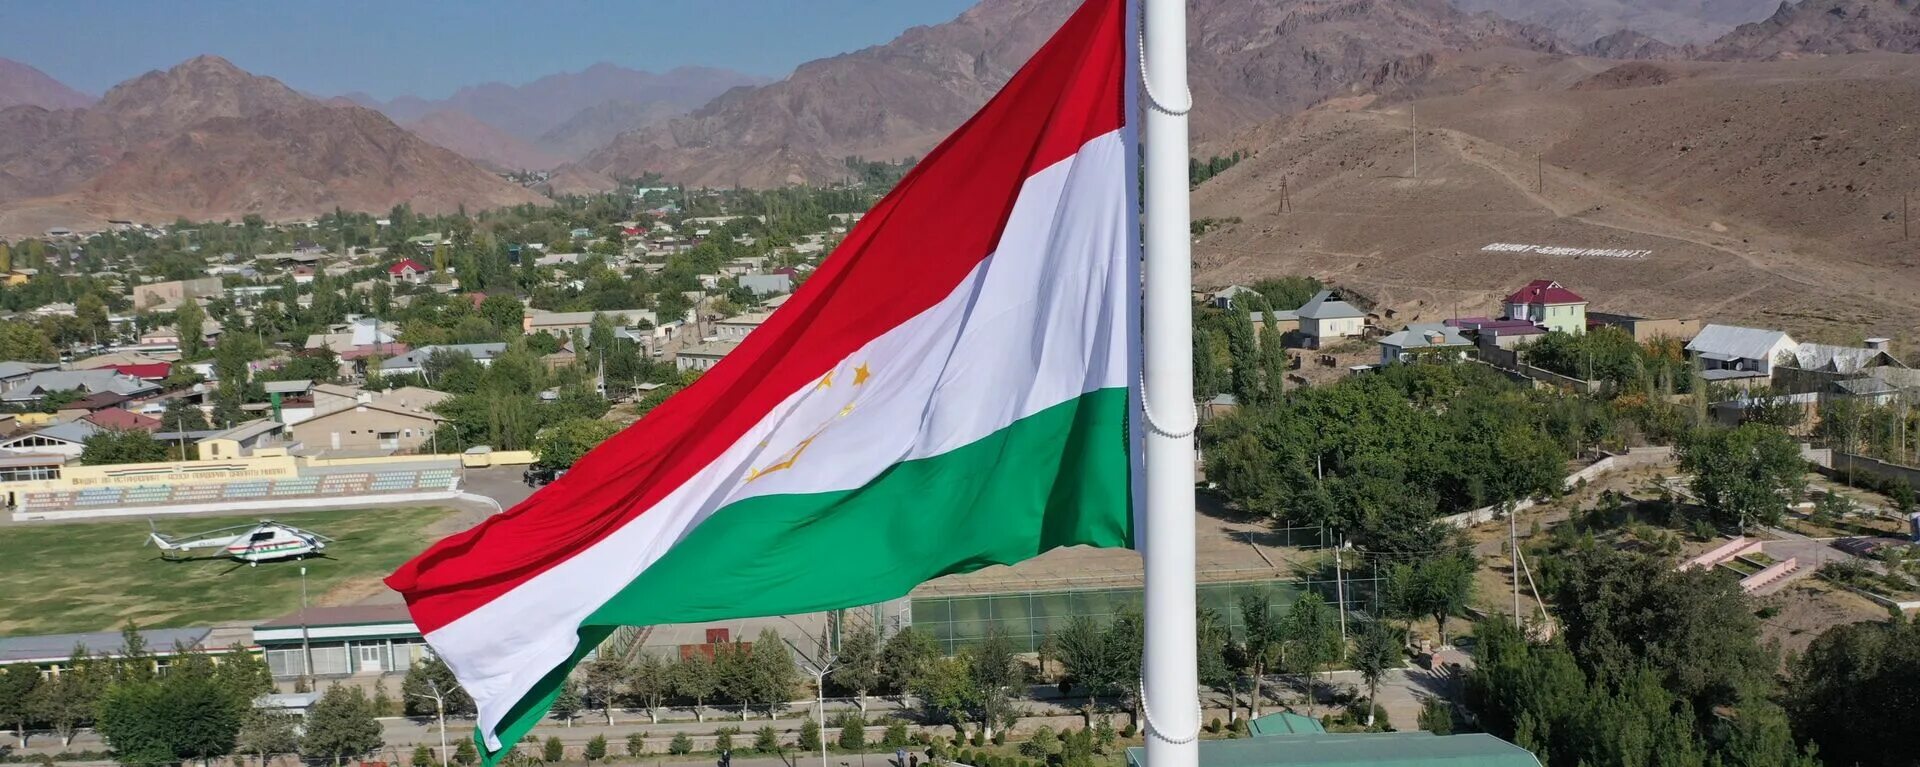 Точикистон язык. Флаг Таджикистана 2022. Талибанский Таджикистан флаг. Бадахшан Таджикистан флаг. Таджикистан Республика Таджикистан.